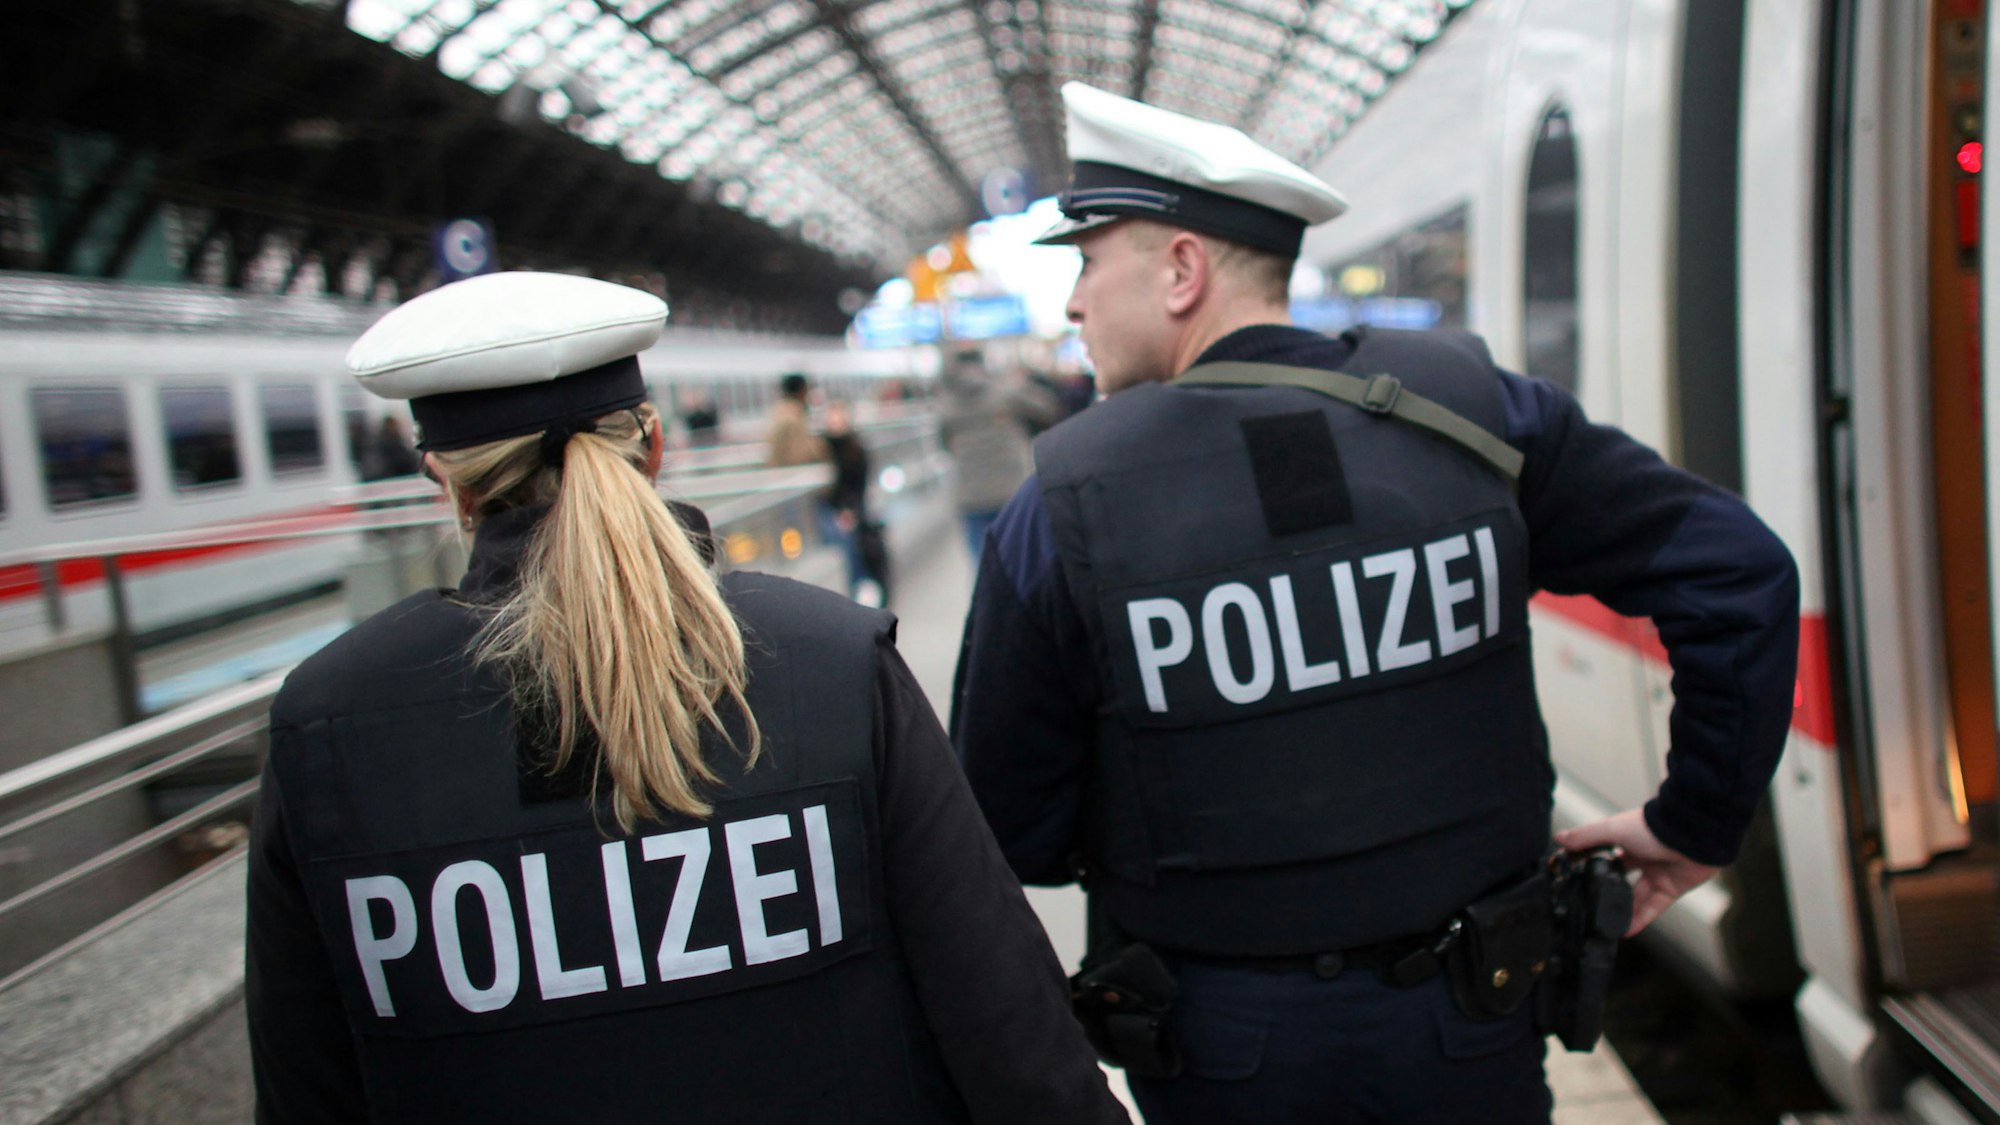 Bundespolizisten patroullieren am 17.11.2010 in Köln im Hauptbahnhof.